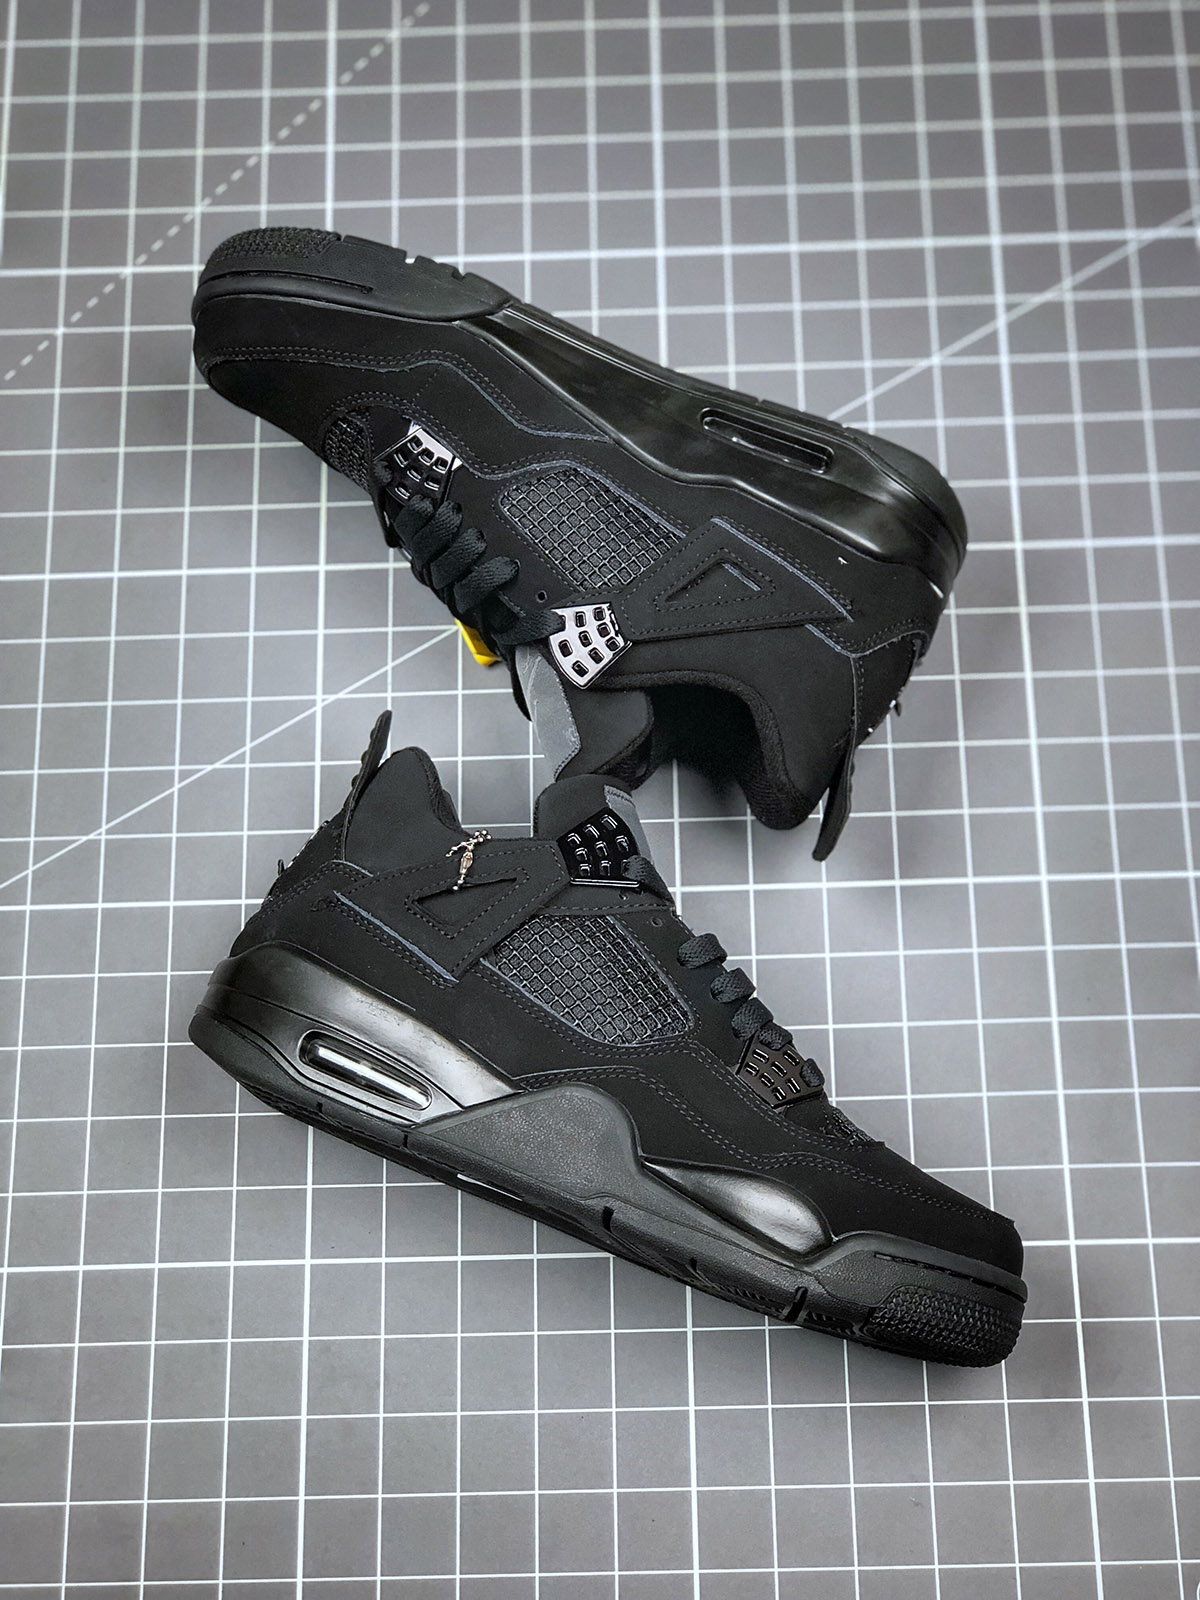 Air Jordan 4 “Black Cat” CU1110010 For Sale Sneaker Hello